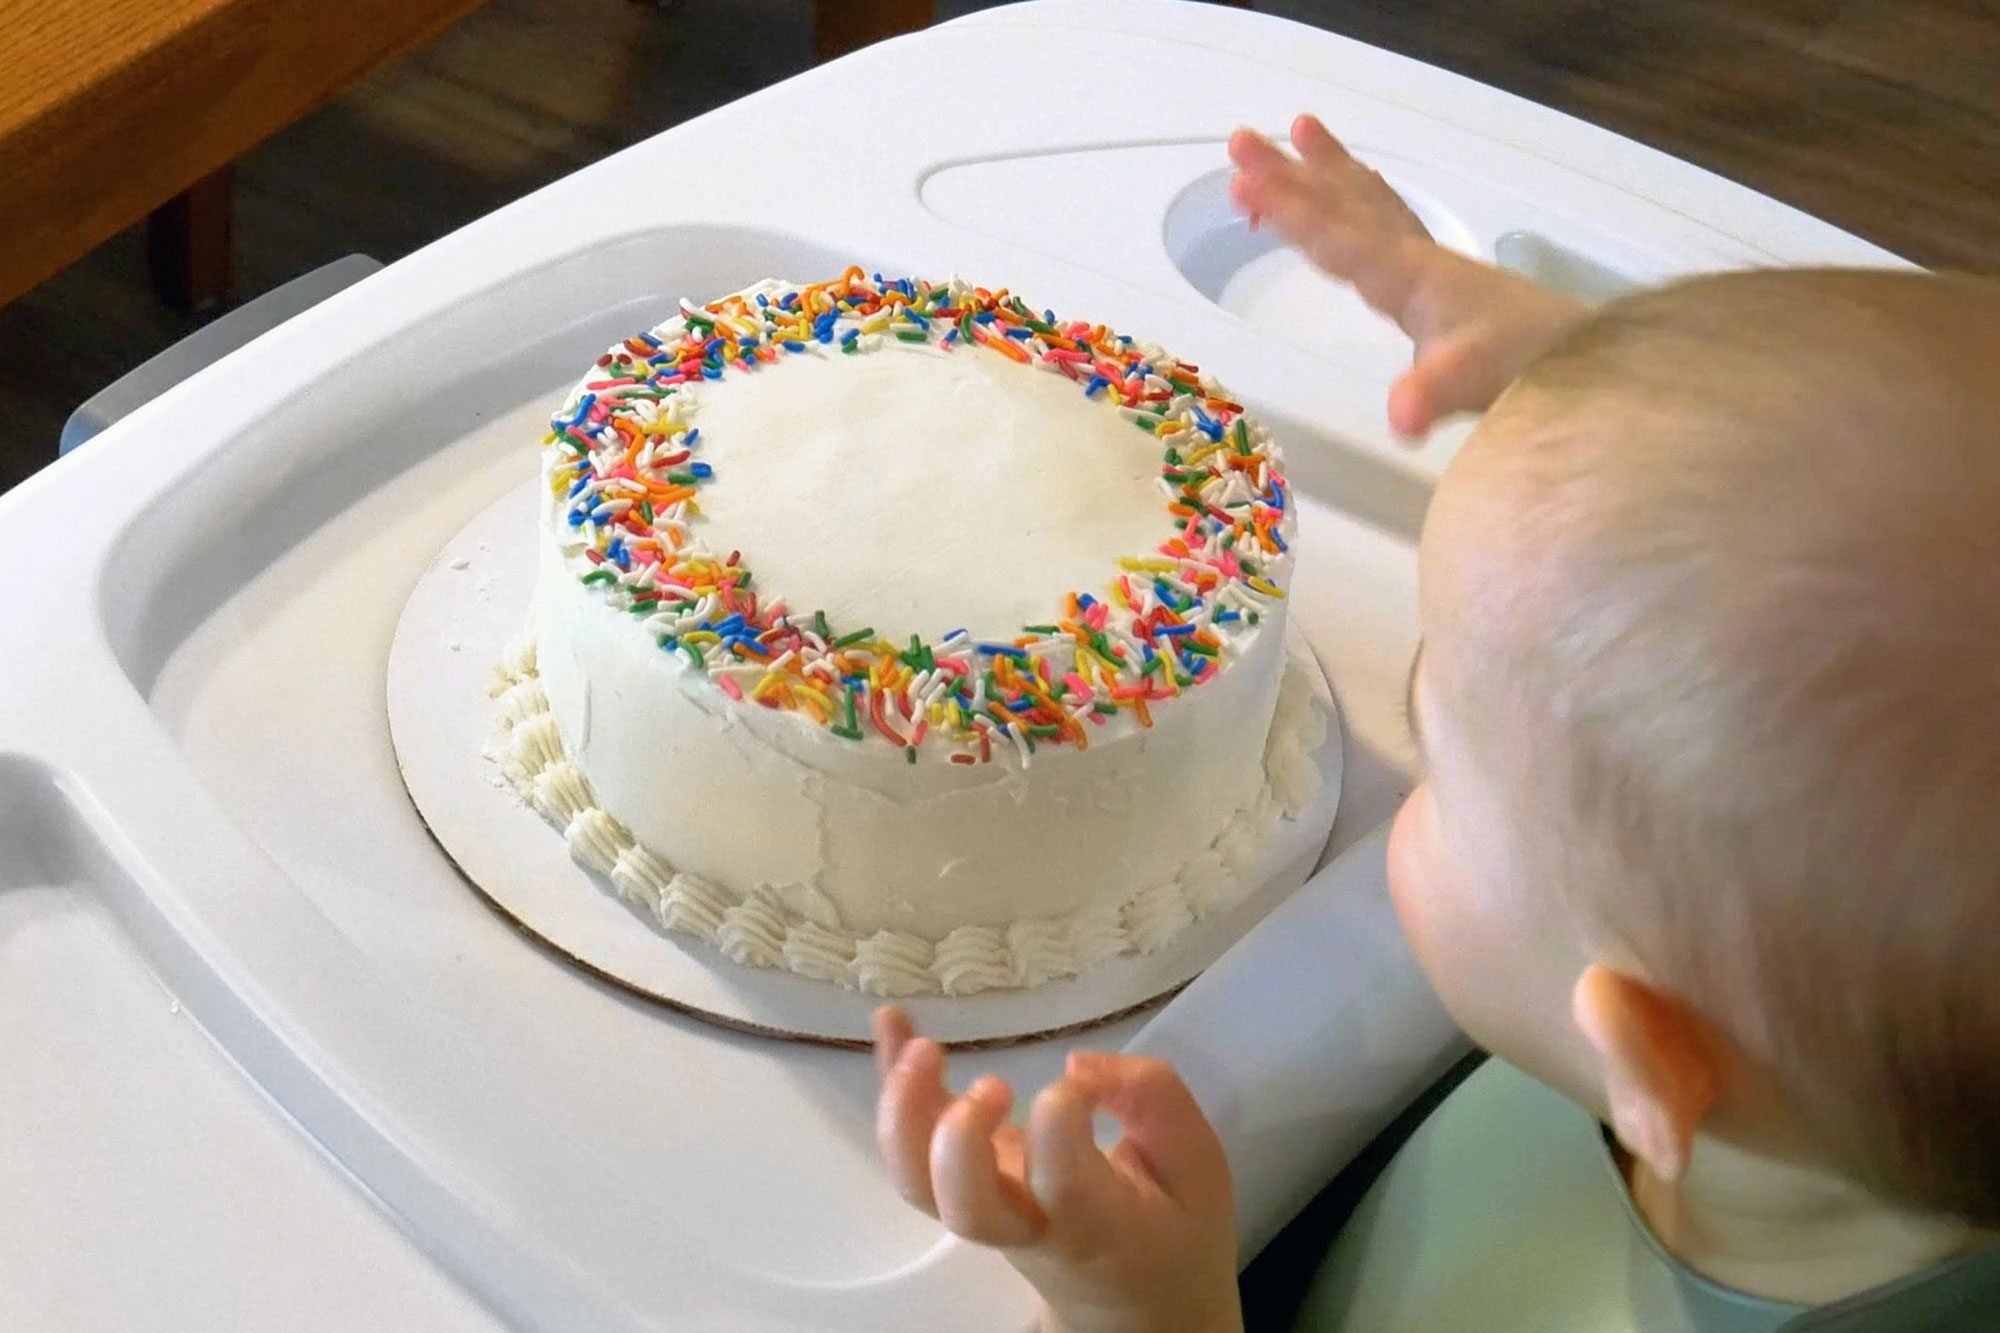 Baby's first smash cake, cake